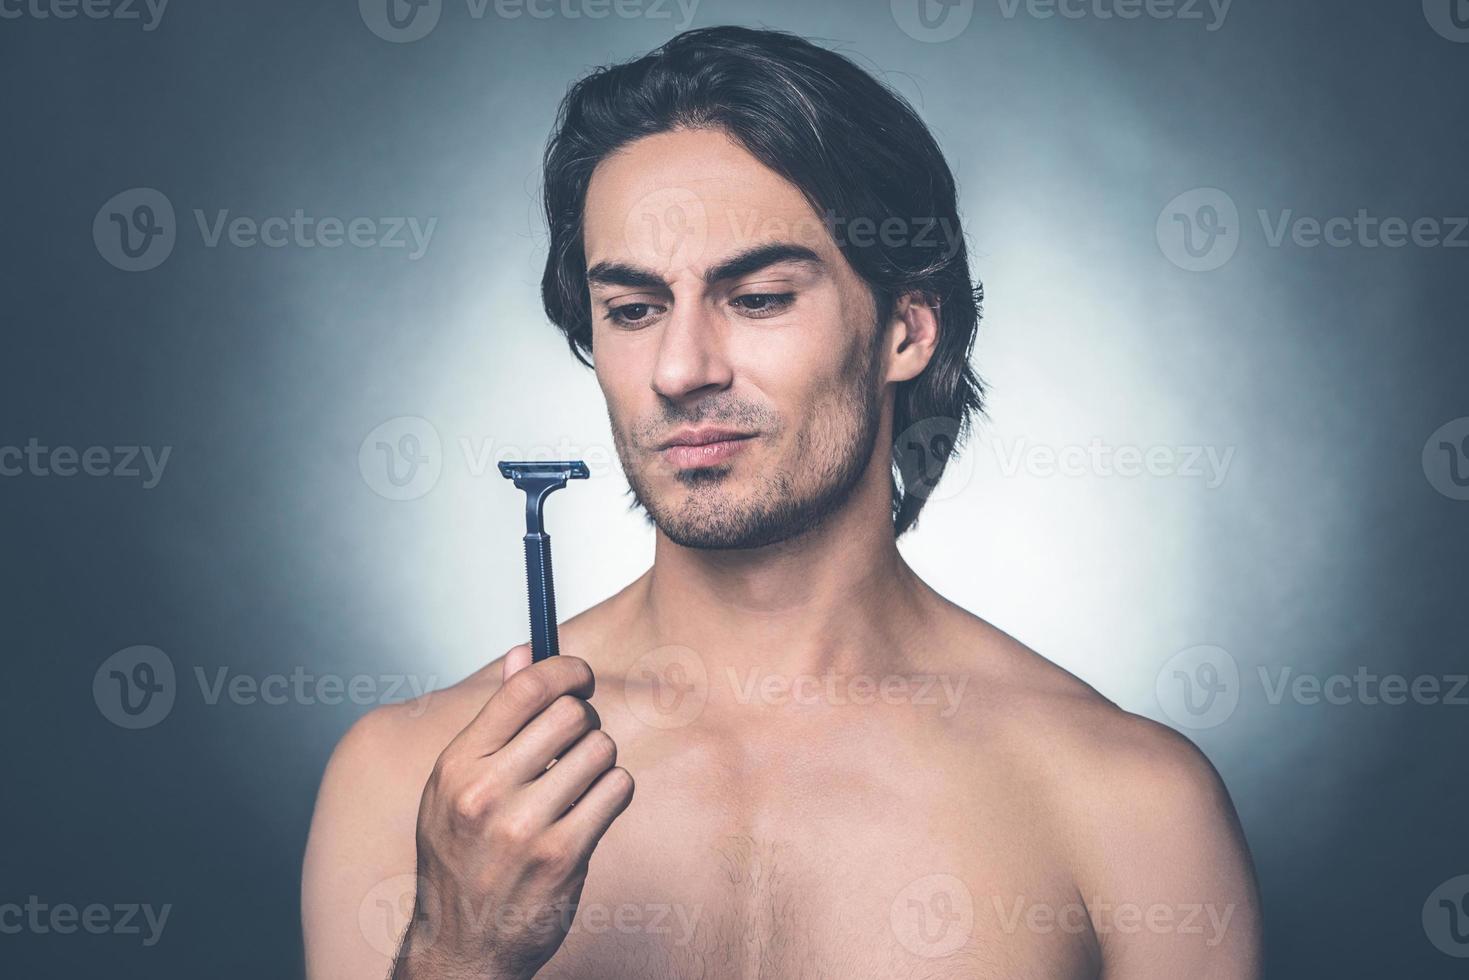 wirklich schlechter Rasierer. Porträt eines nachdenklichen jungen Mannes ohne Hemd, der Rasiermesser betrachtet, während er vor grauem Hintergrund steht foto